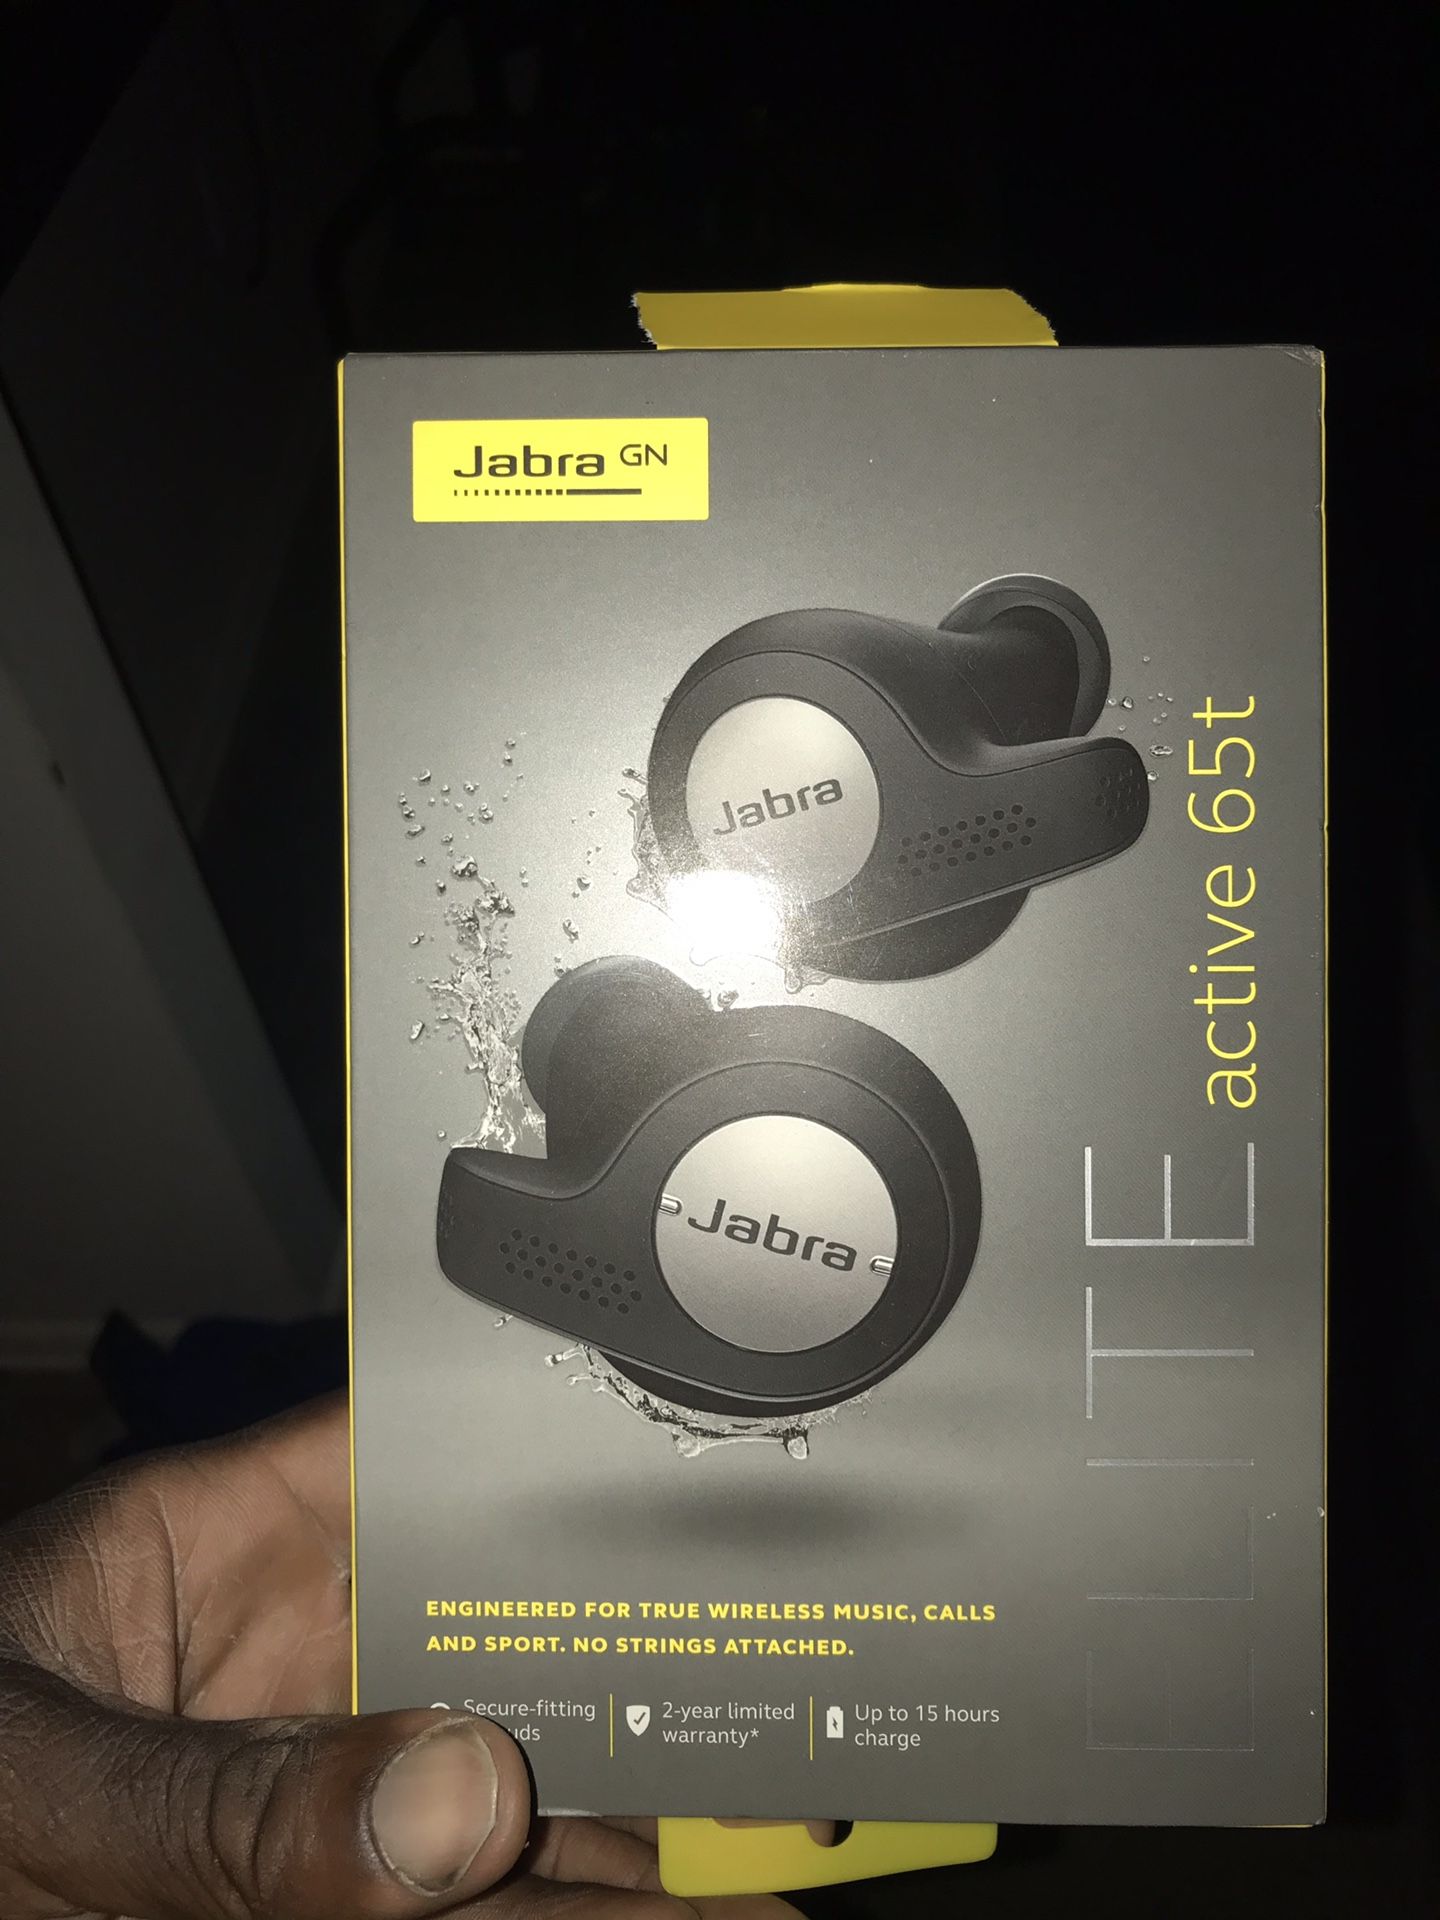 Jabra Truly Wireless earphones. Headphones